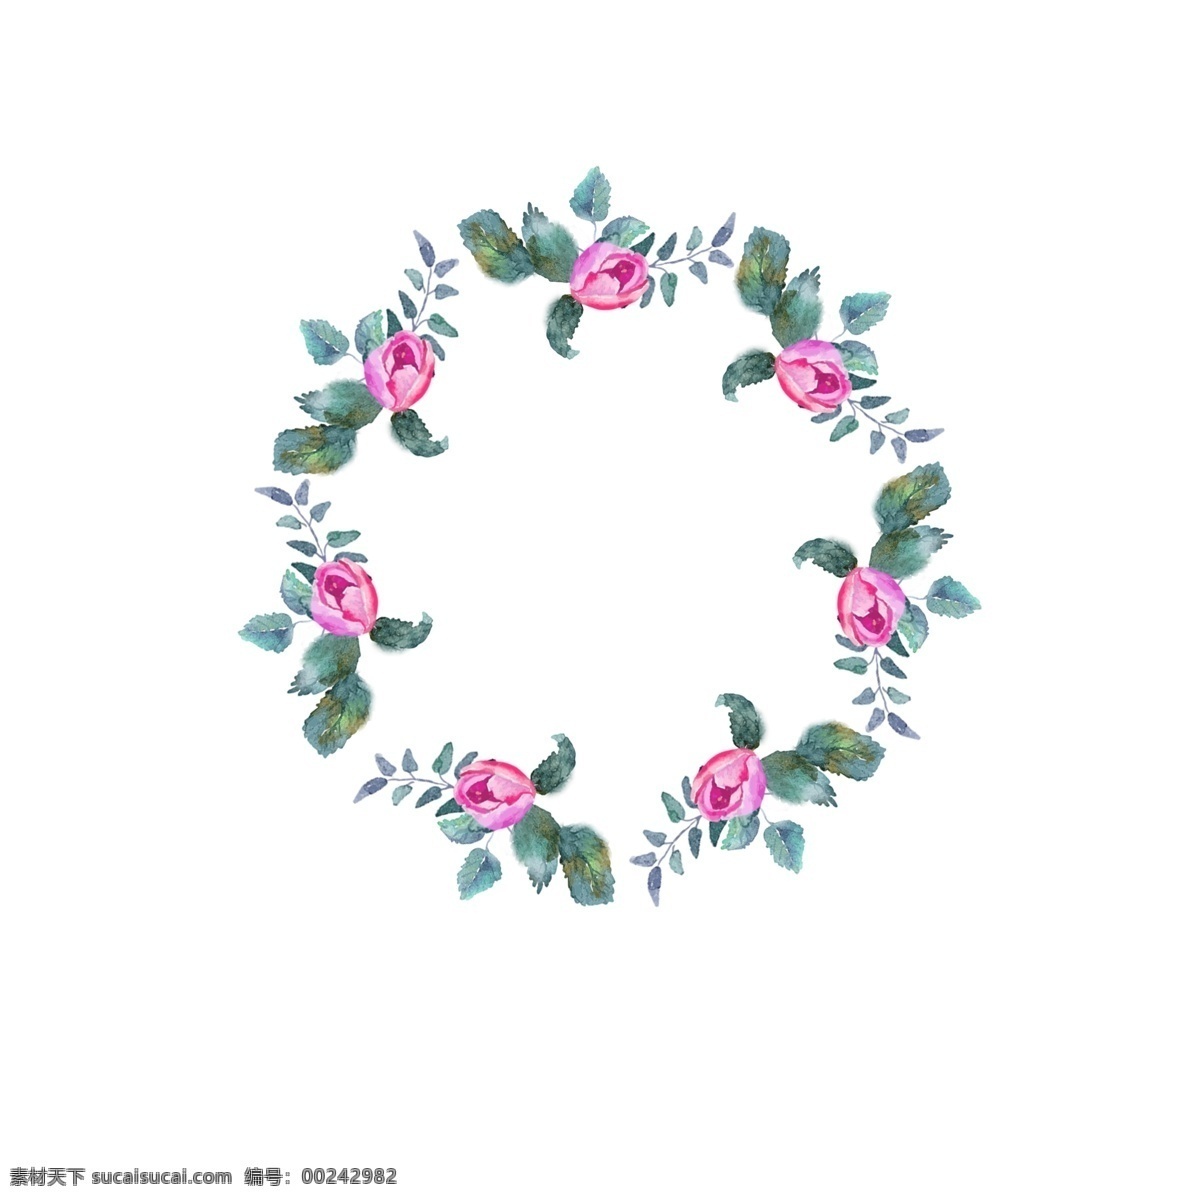 粉色 花卉 边框 玫瑰花 图 框 边框元素 花卉边框 花环 手绘植物 粉色花卉边框 手绘花卉边框 手绘花元素 手绘